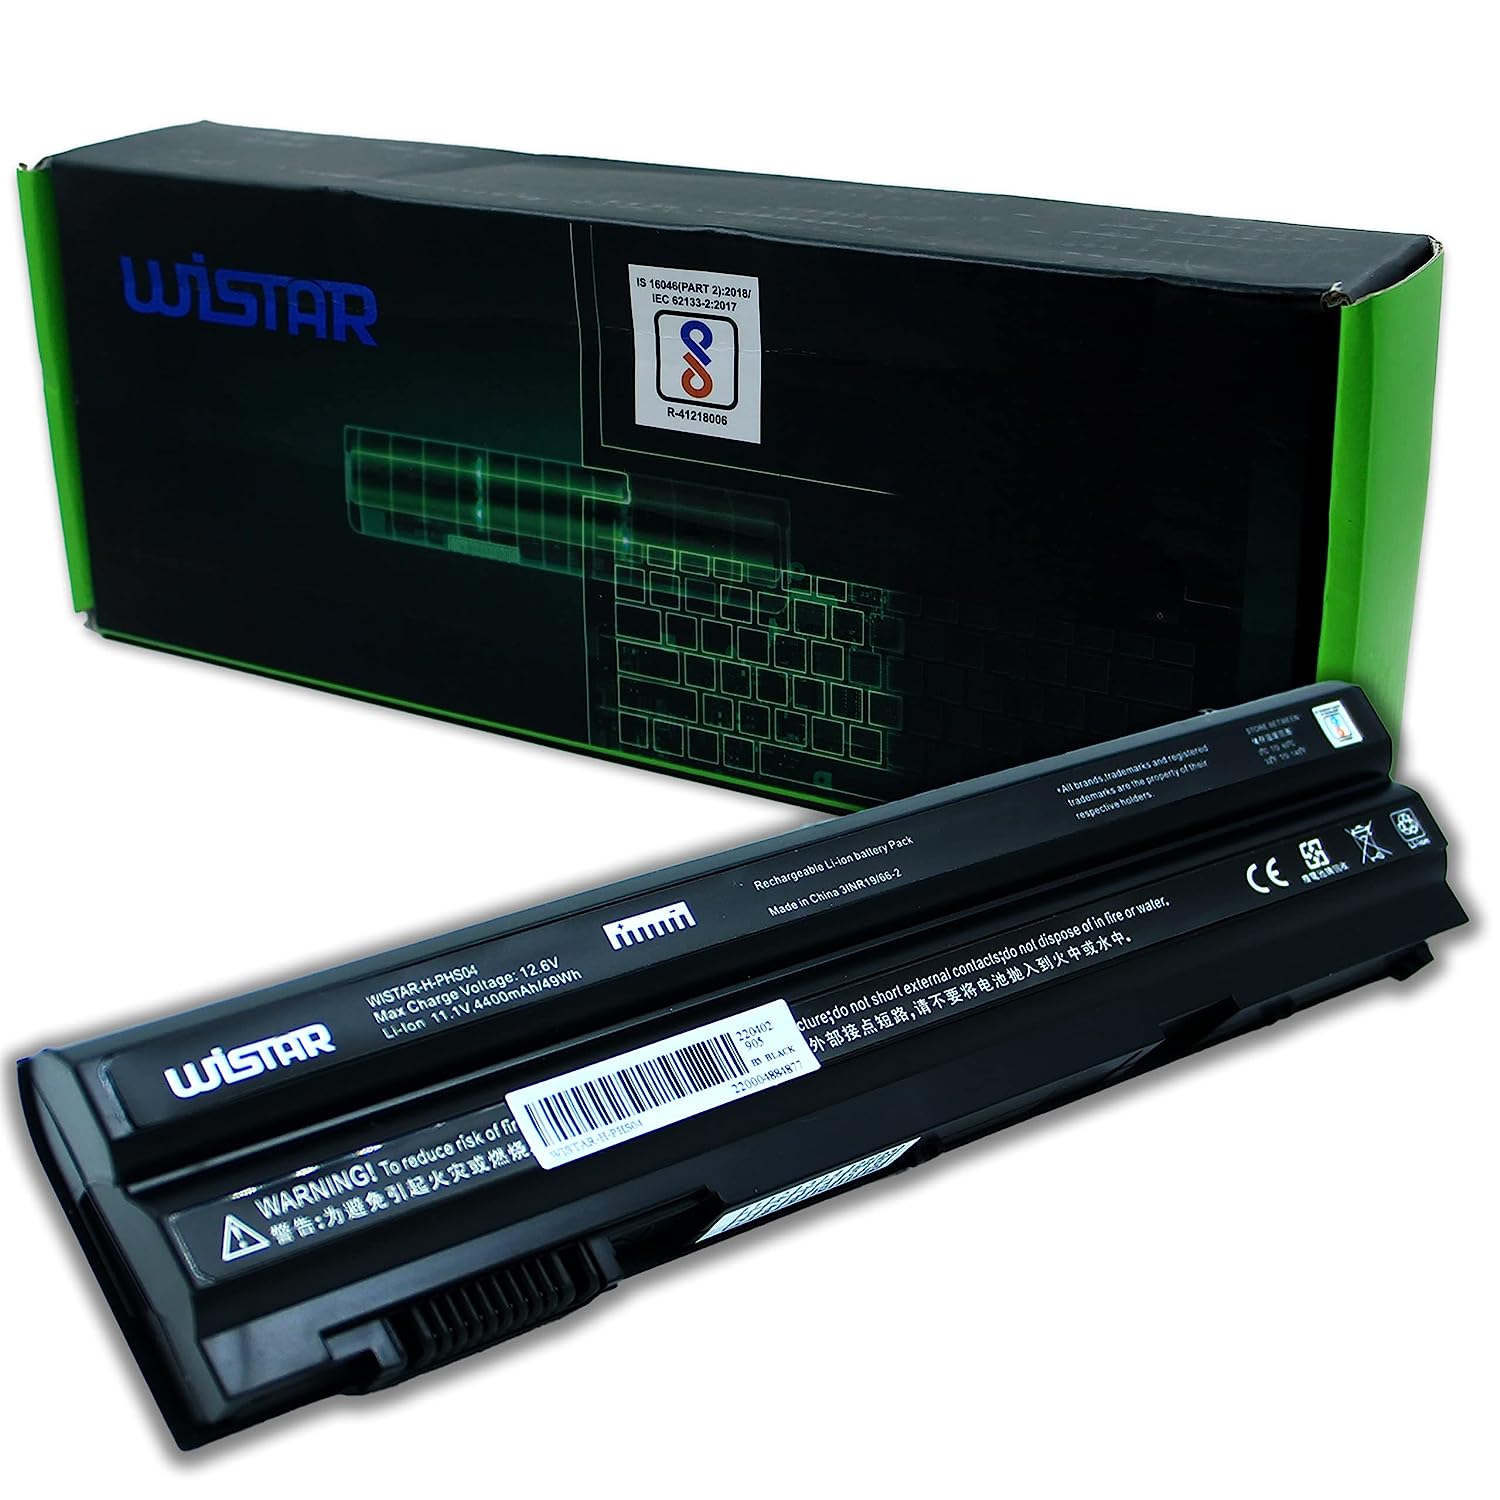 WISTAR Laptop Battery for Dell Latitude E6420 E6520 E6530 E5420 E5520 E5430 E5530 2P2MJ T54FJ 12-1325 312-1165 M5Y0X PRV1Y E6420 8858X